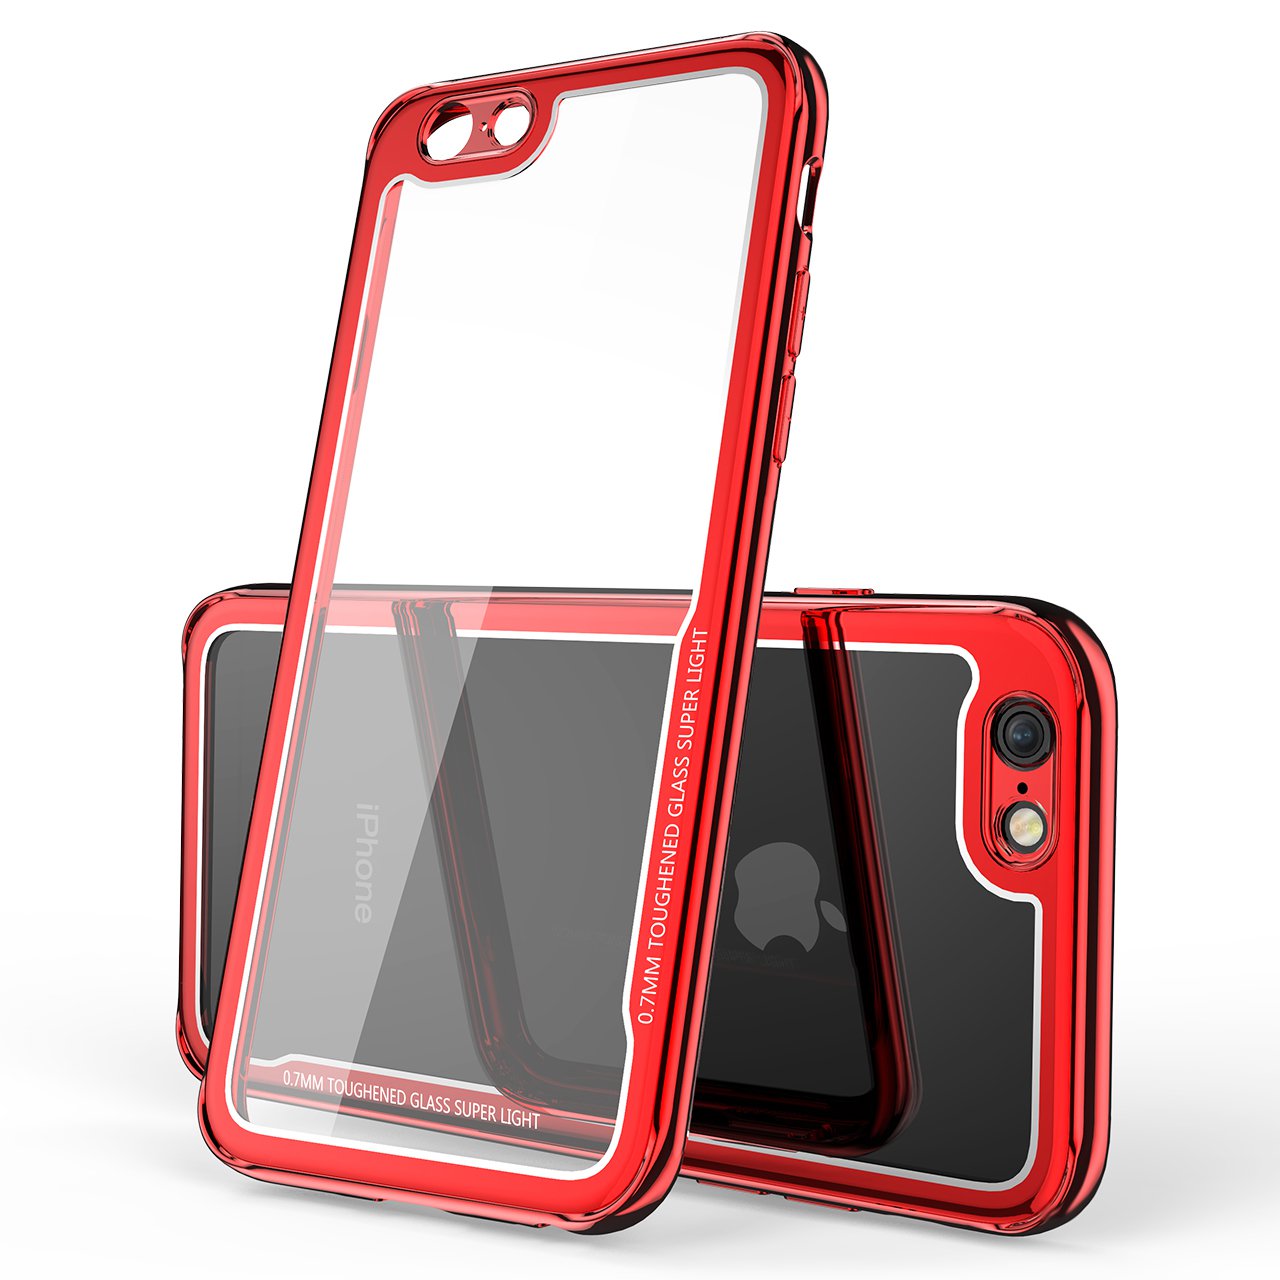 

Bakeey Покрытие стойкое к царапинам Прозрачное темное стекло Защитное Чехол Для iPhone 6s Plus/6 Plus